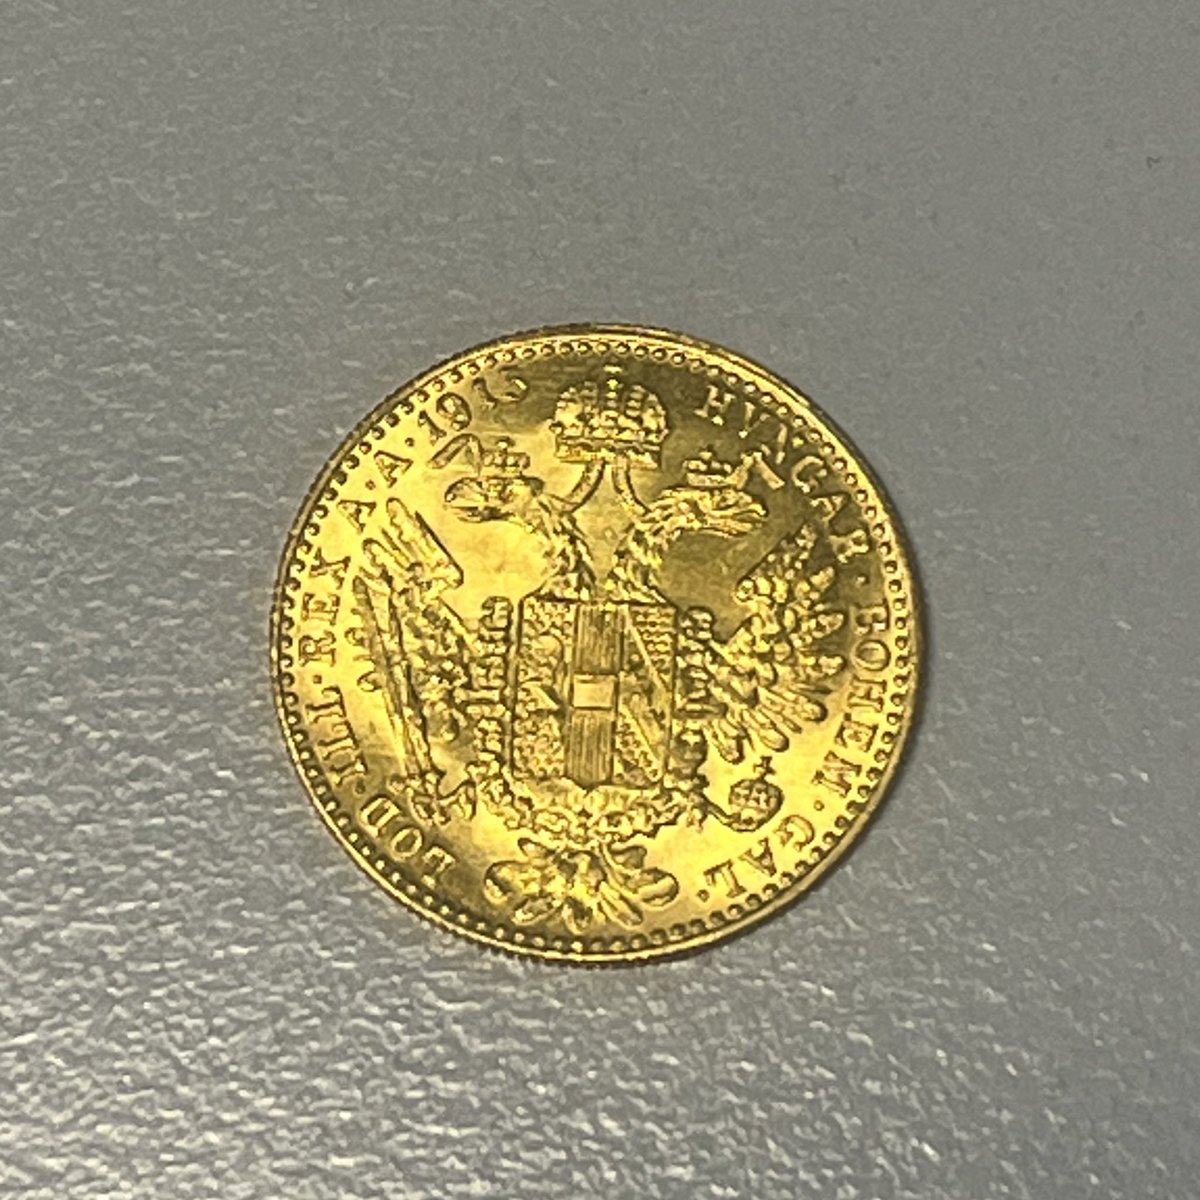 Kennt sich jemand mit Münzen aus? Ich habe diese Münze in meinem Zimmer beim Ausräumen gefunden und weiß nicht ob sie was Wert ist bzw. wie viel sie Wert ist